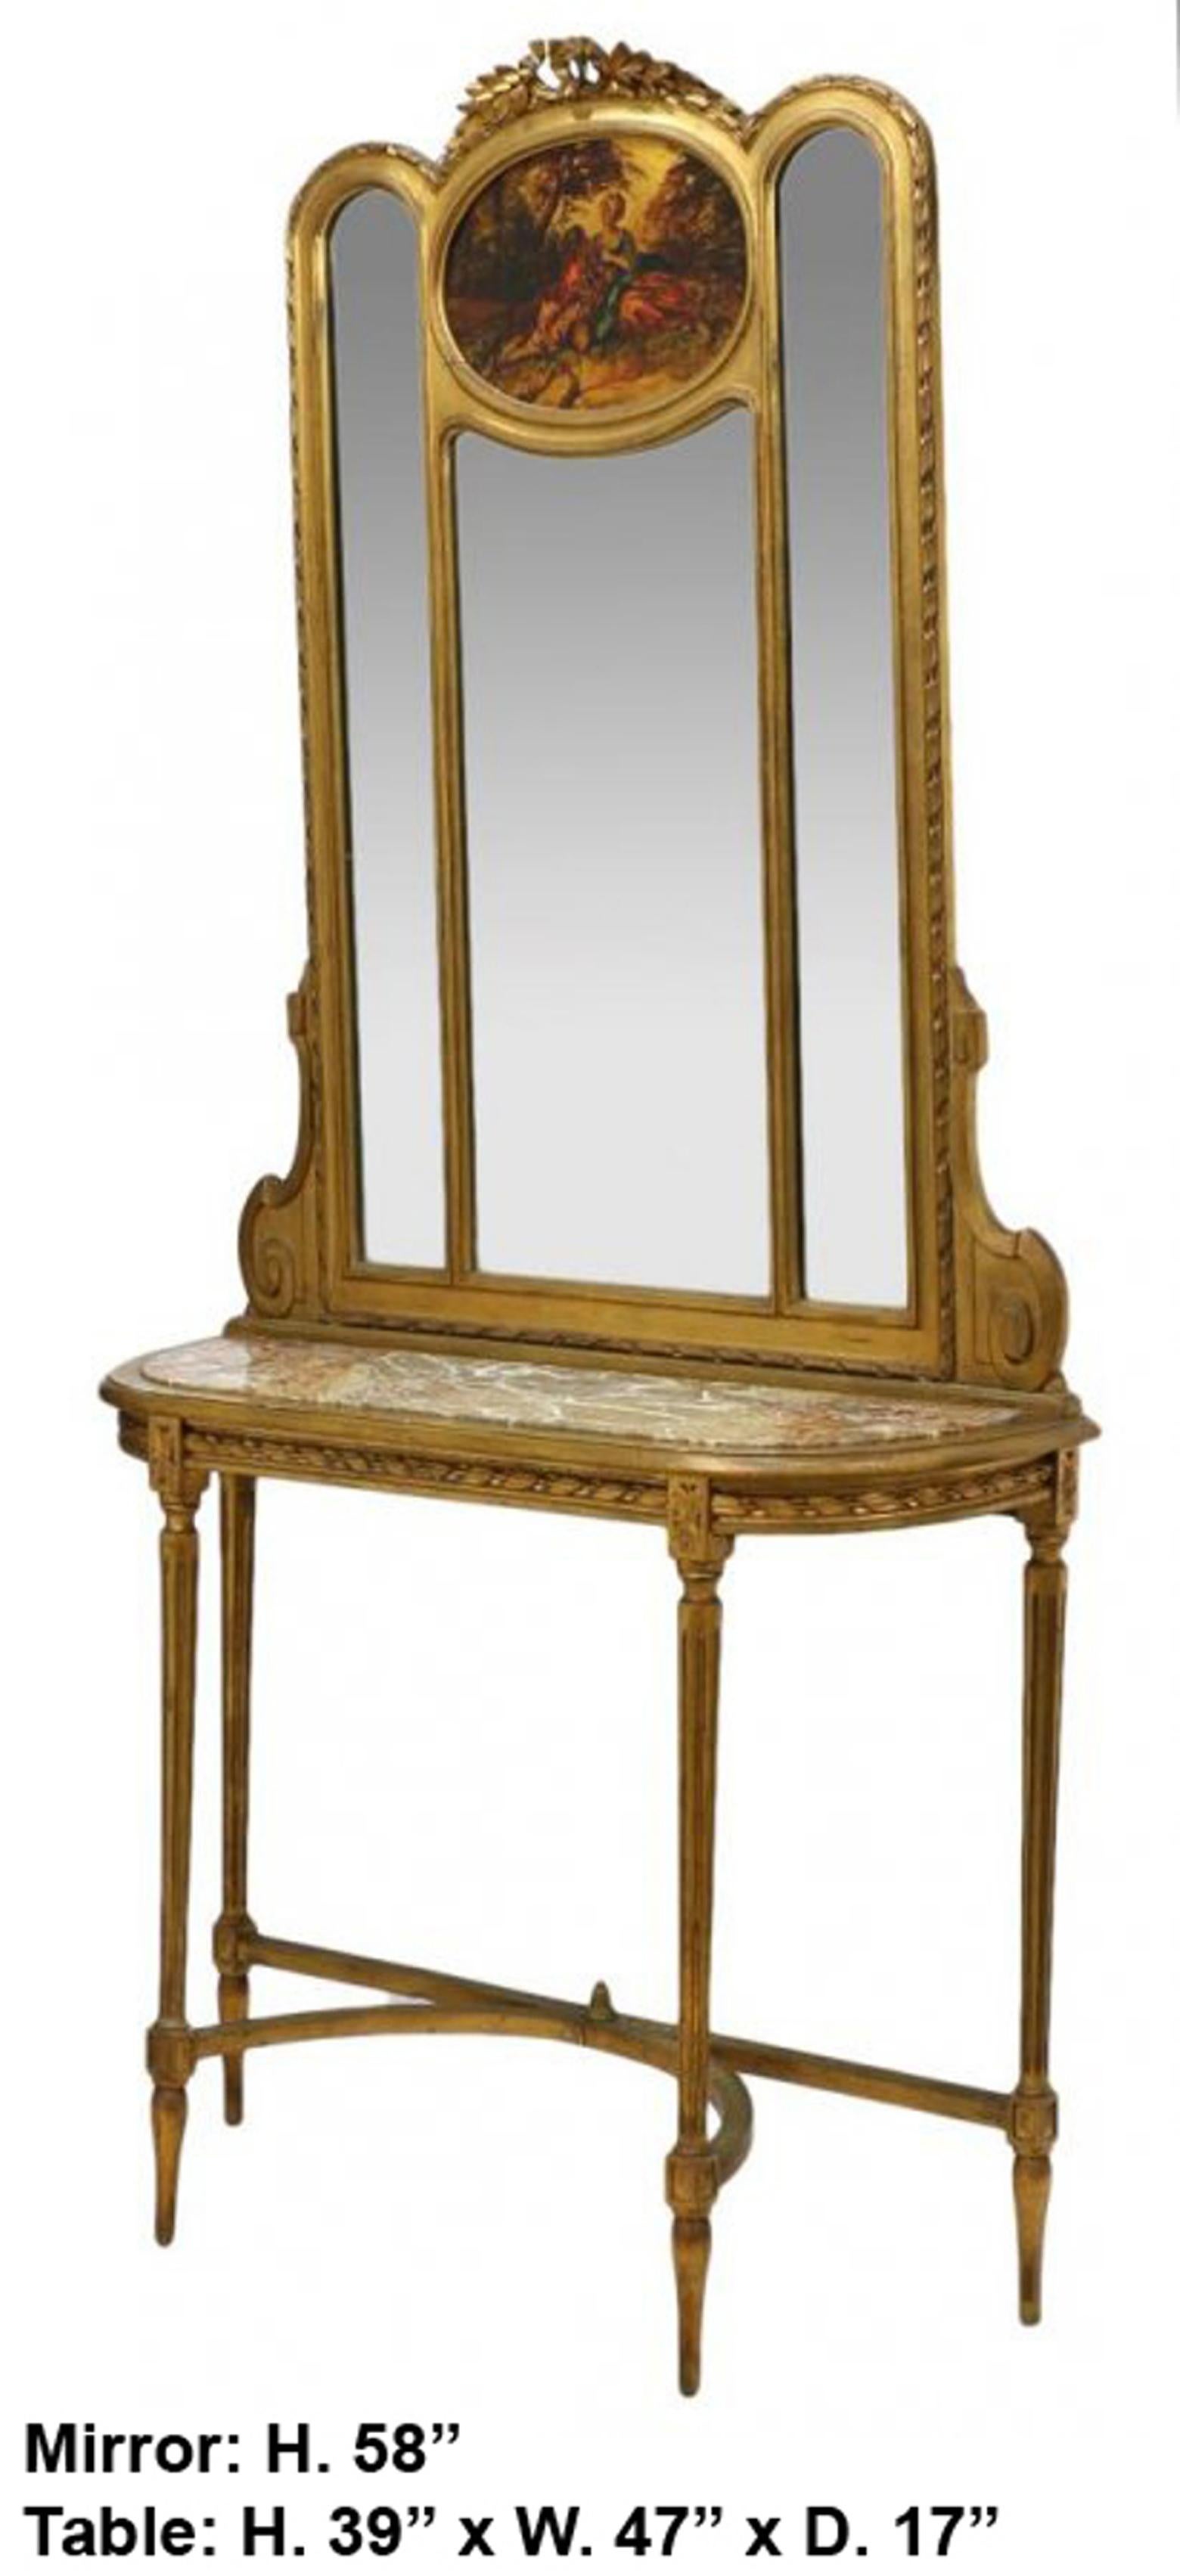 Schöner französischer Spiegel aus vergoldetem Vernis Martin im Louis XVI-Stil und Konsole Trumeau, 19. Jahrhundert.

Der Spiegel aus geschnitztem Vergoldungsholz ist mit einem von Foliate inspirierten Wappen über einem ovalen Öl auf Leinwand